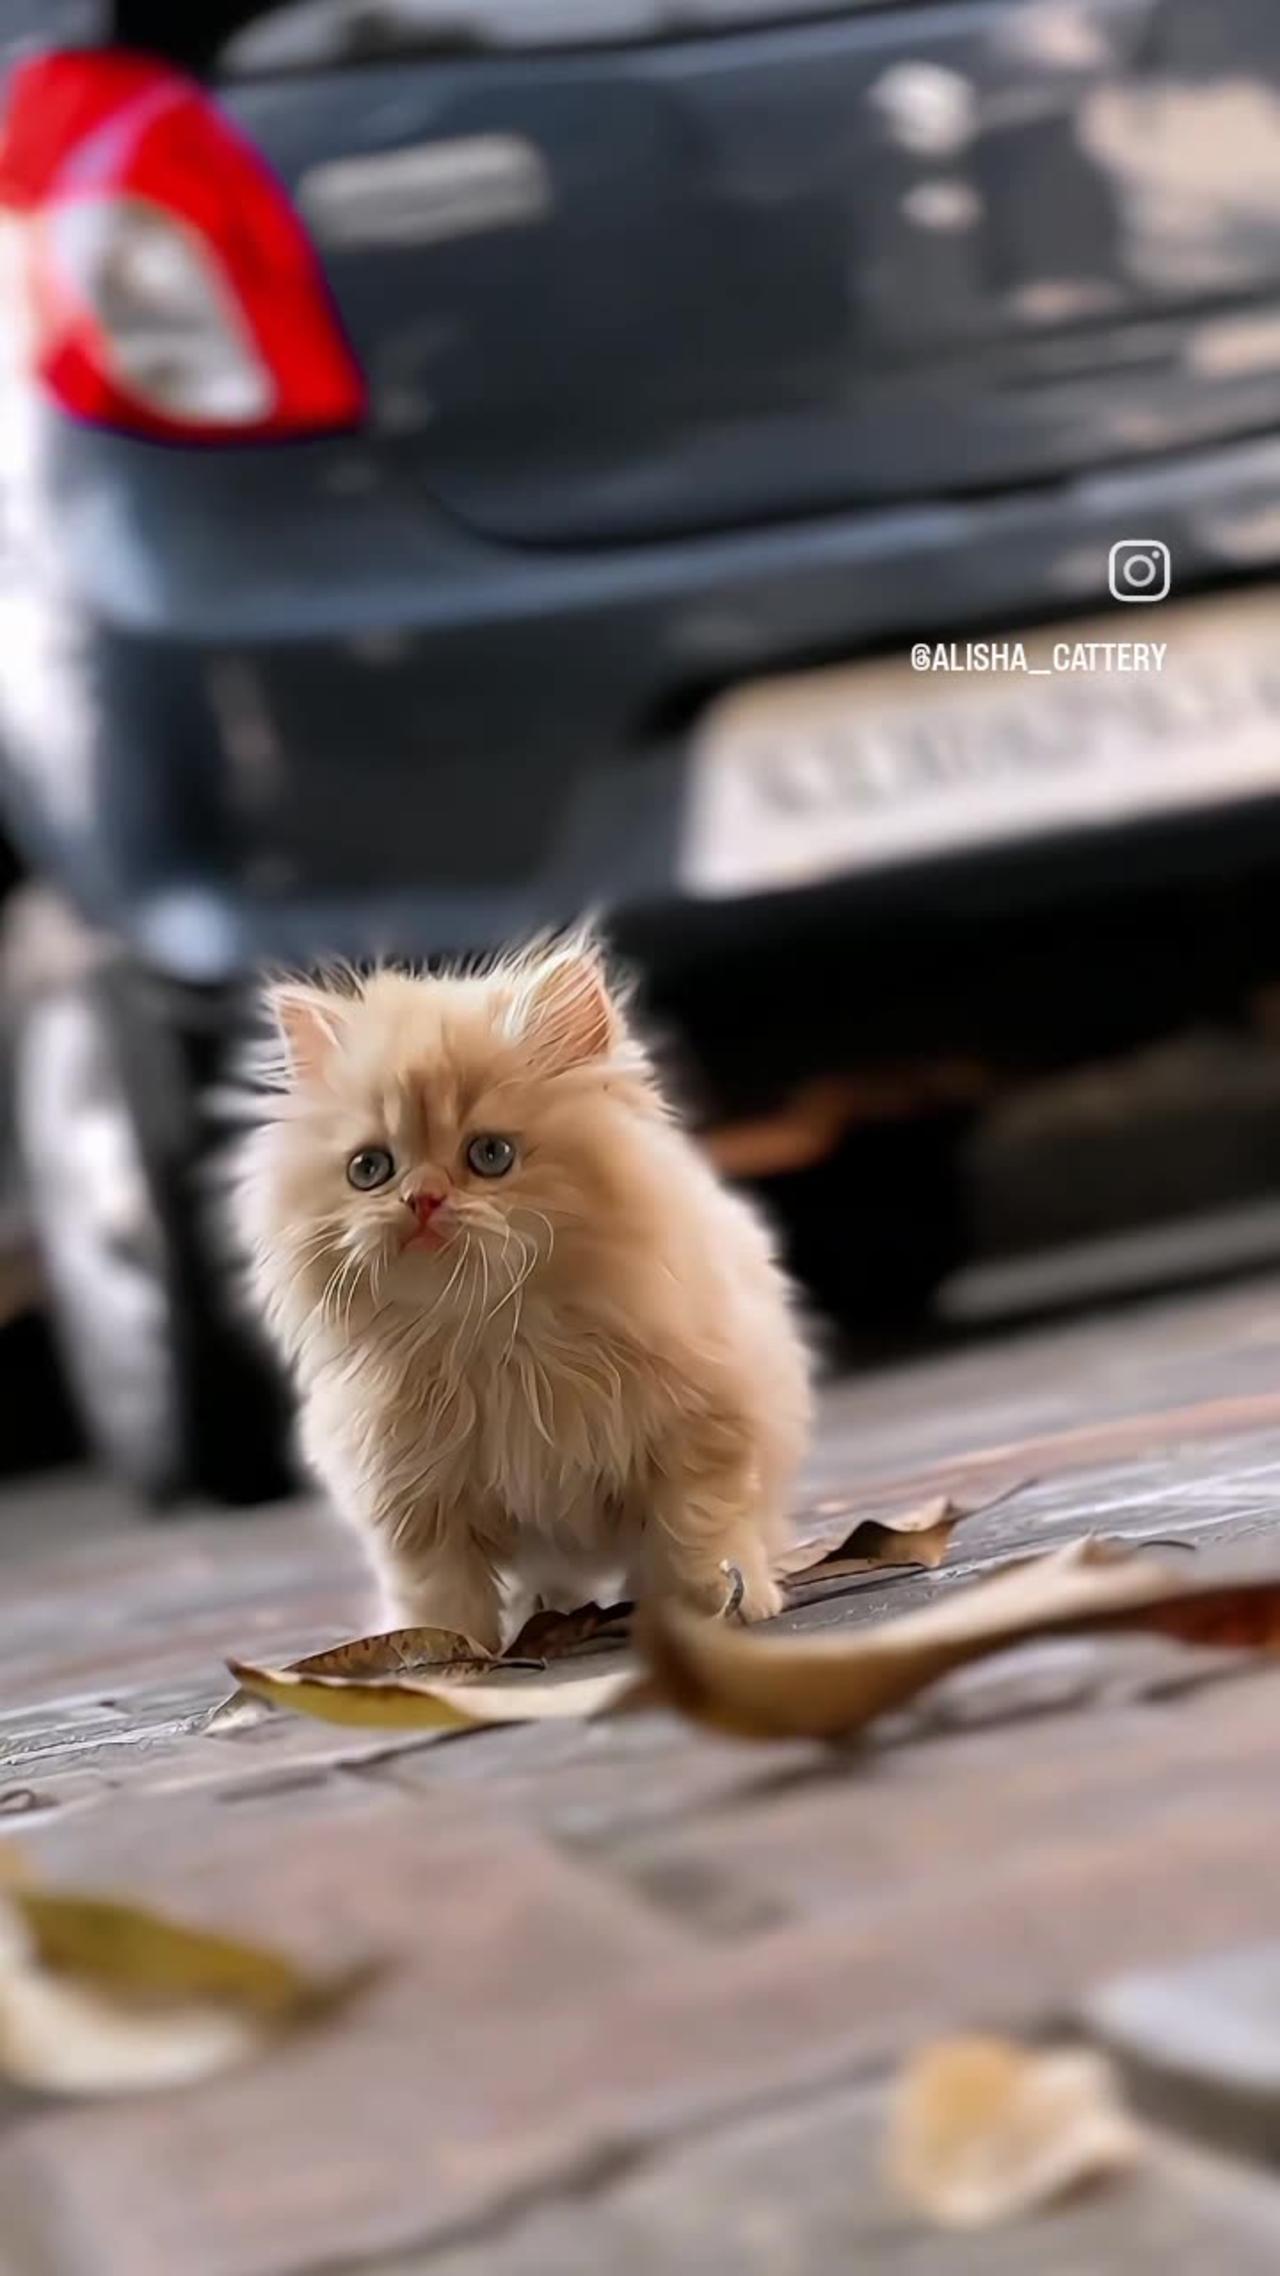 Cute cat video hd